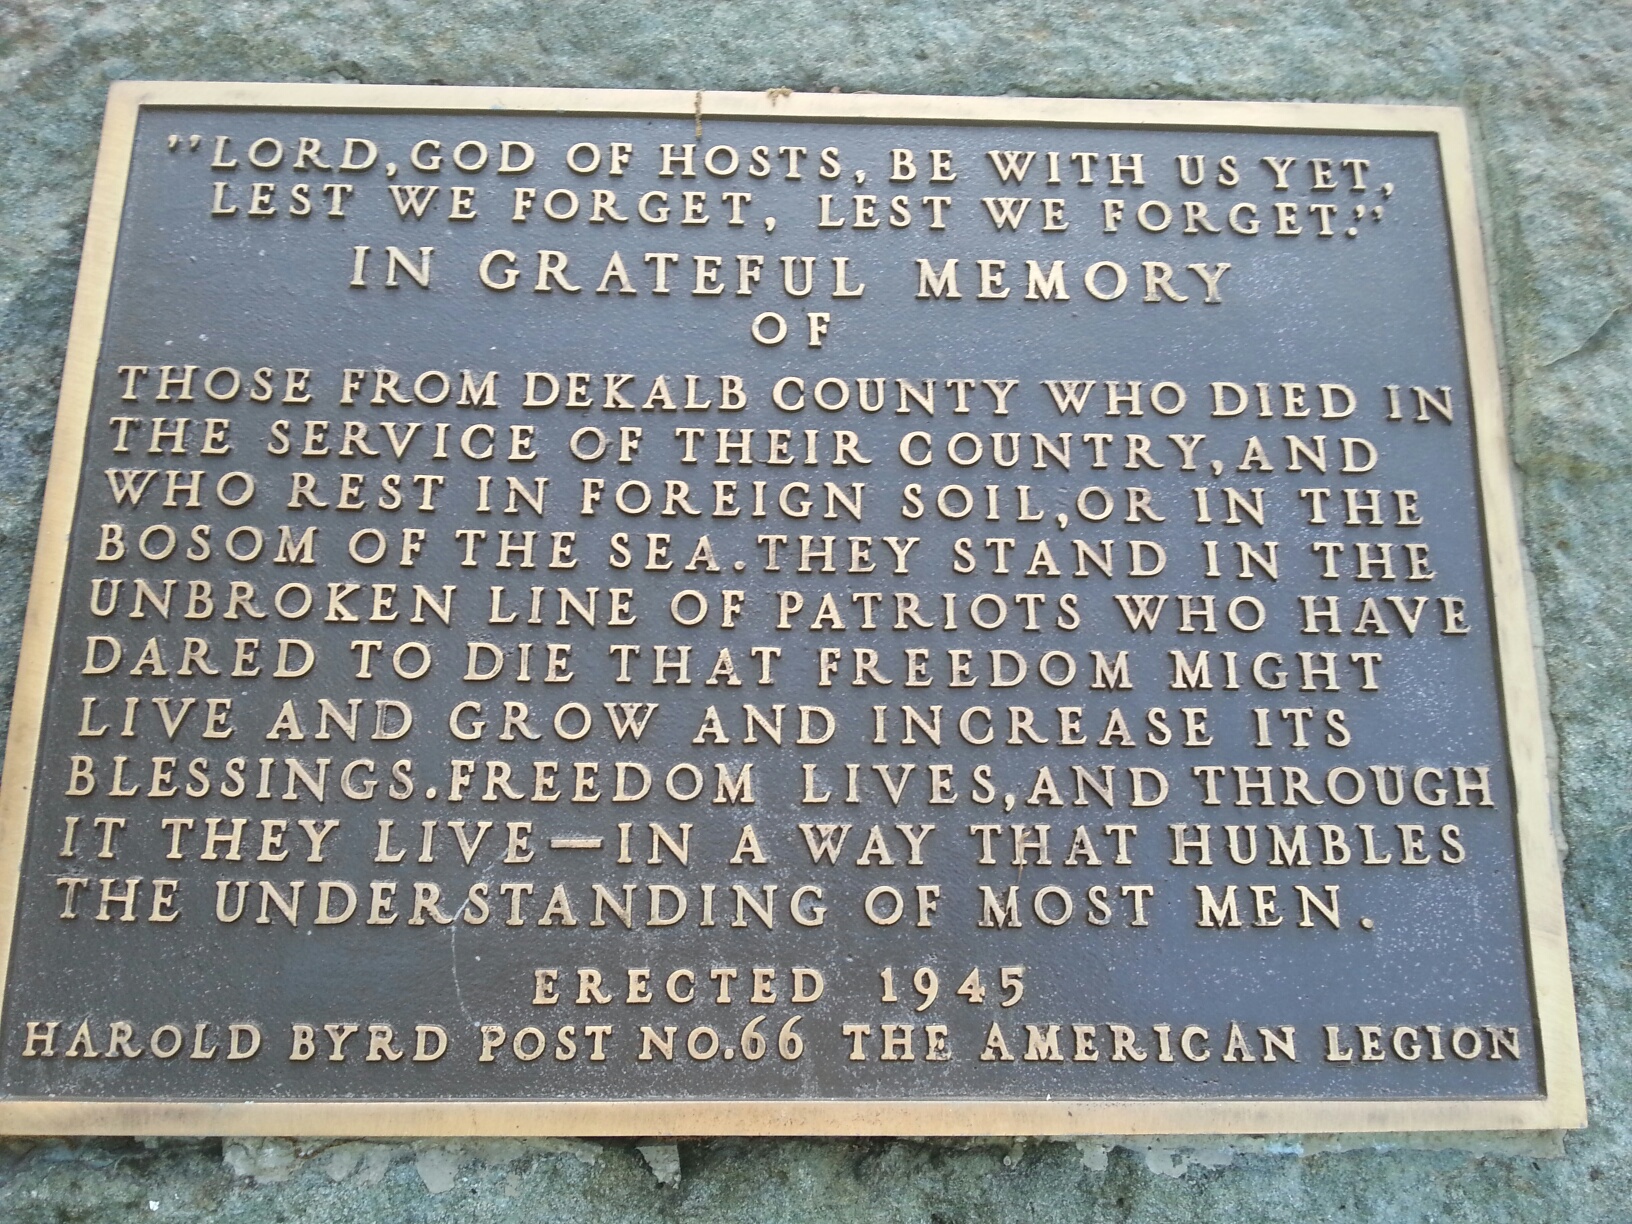 1945 Harold Byrd plaque